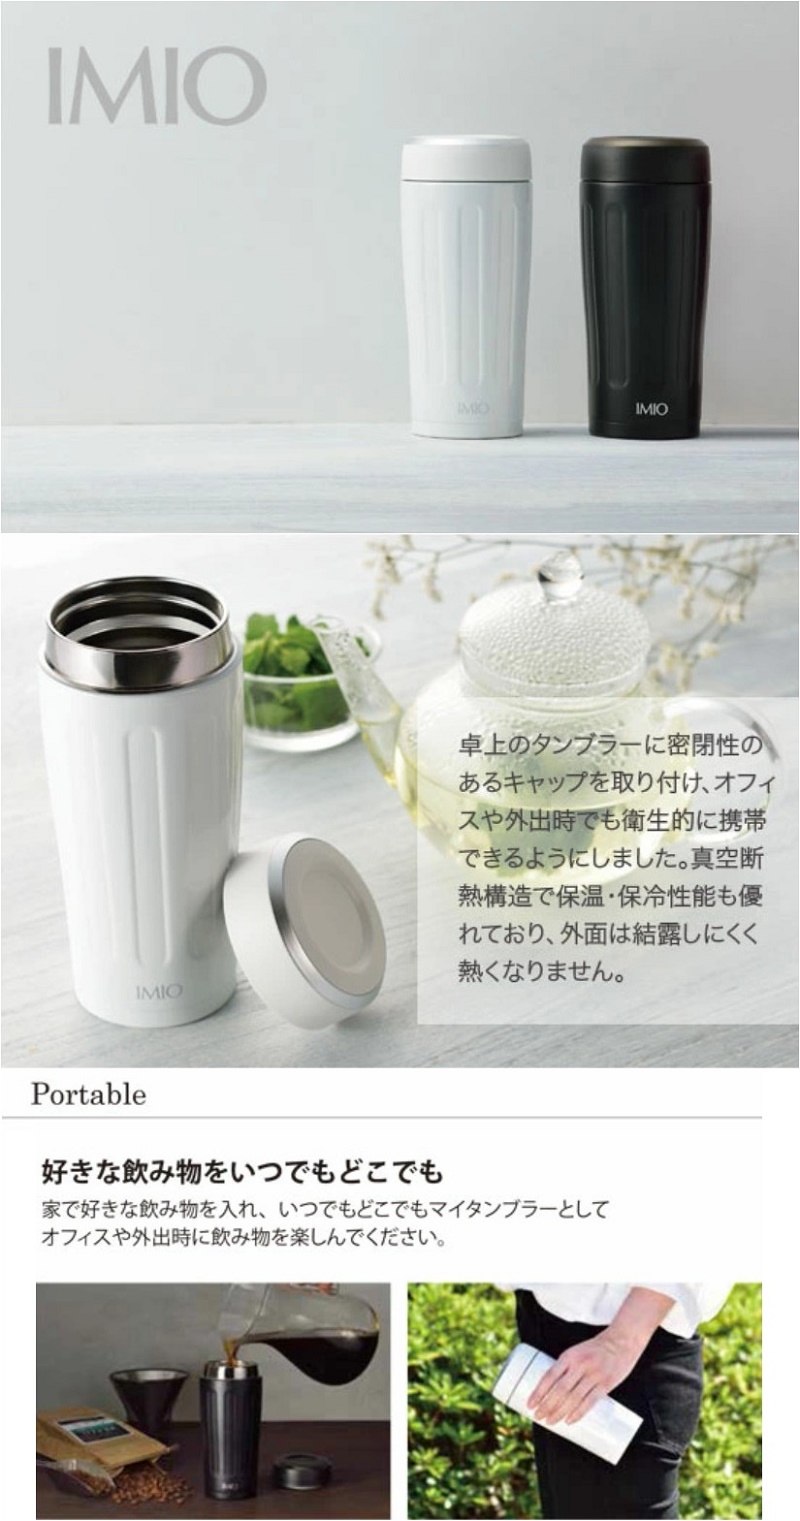 Cốc giữ nhiệt Nhật Bản Imio Portable Tumbler - Hàng nội địa Nhật Bản |nhập khẩu chính hãng| |360ml| |480ml|